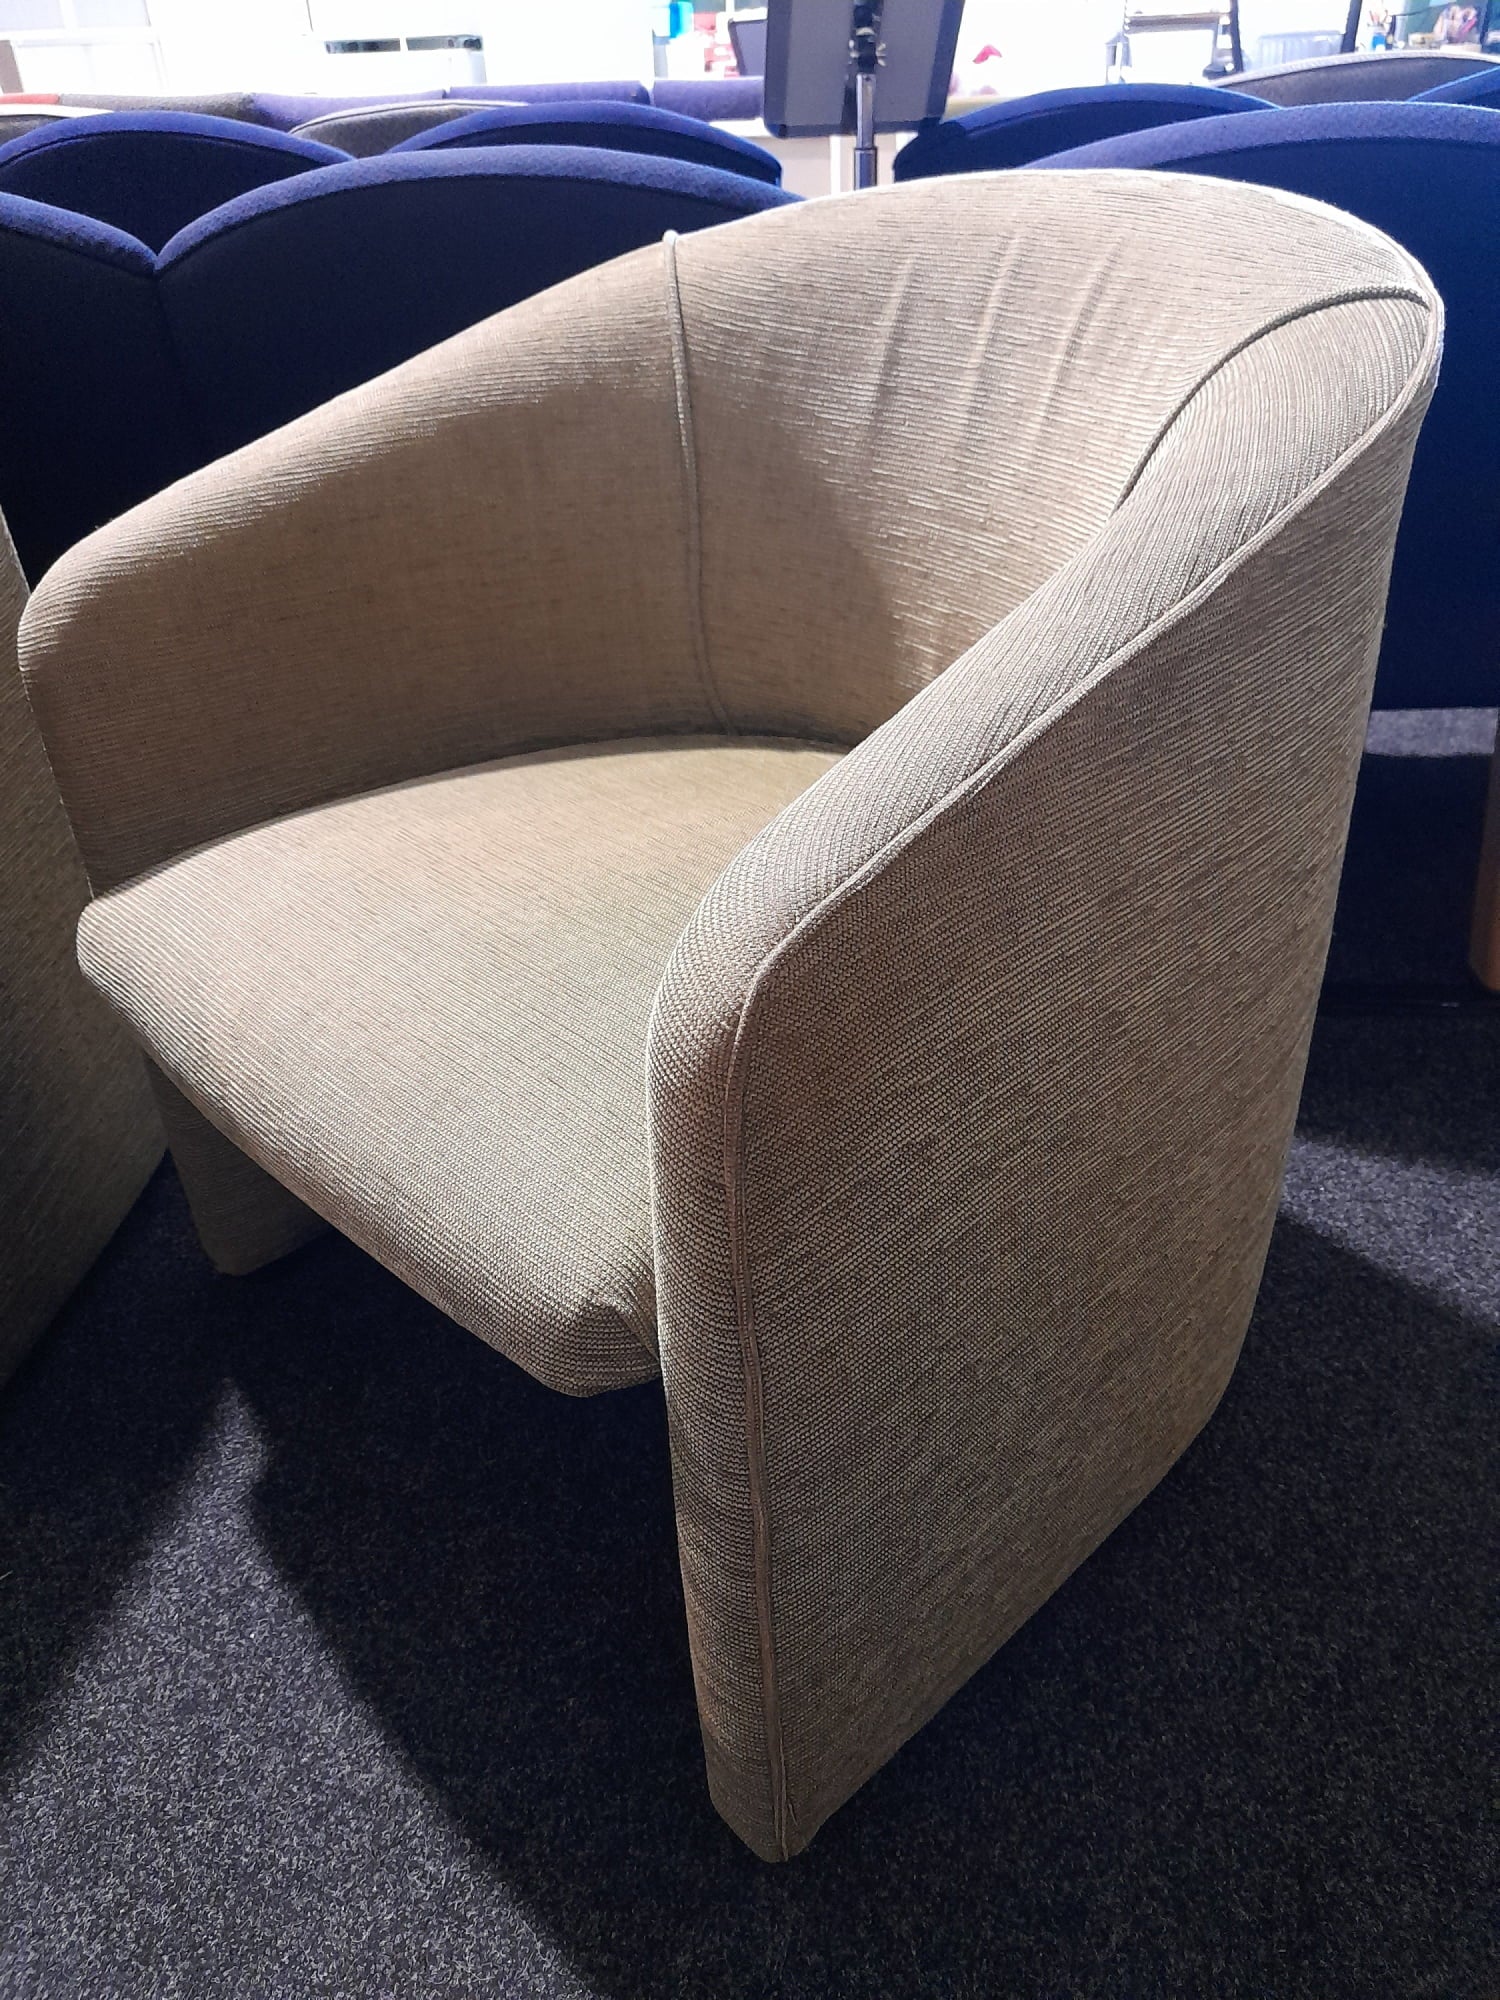 Single Sofa Chair - Pale Green